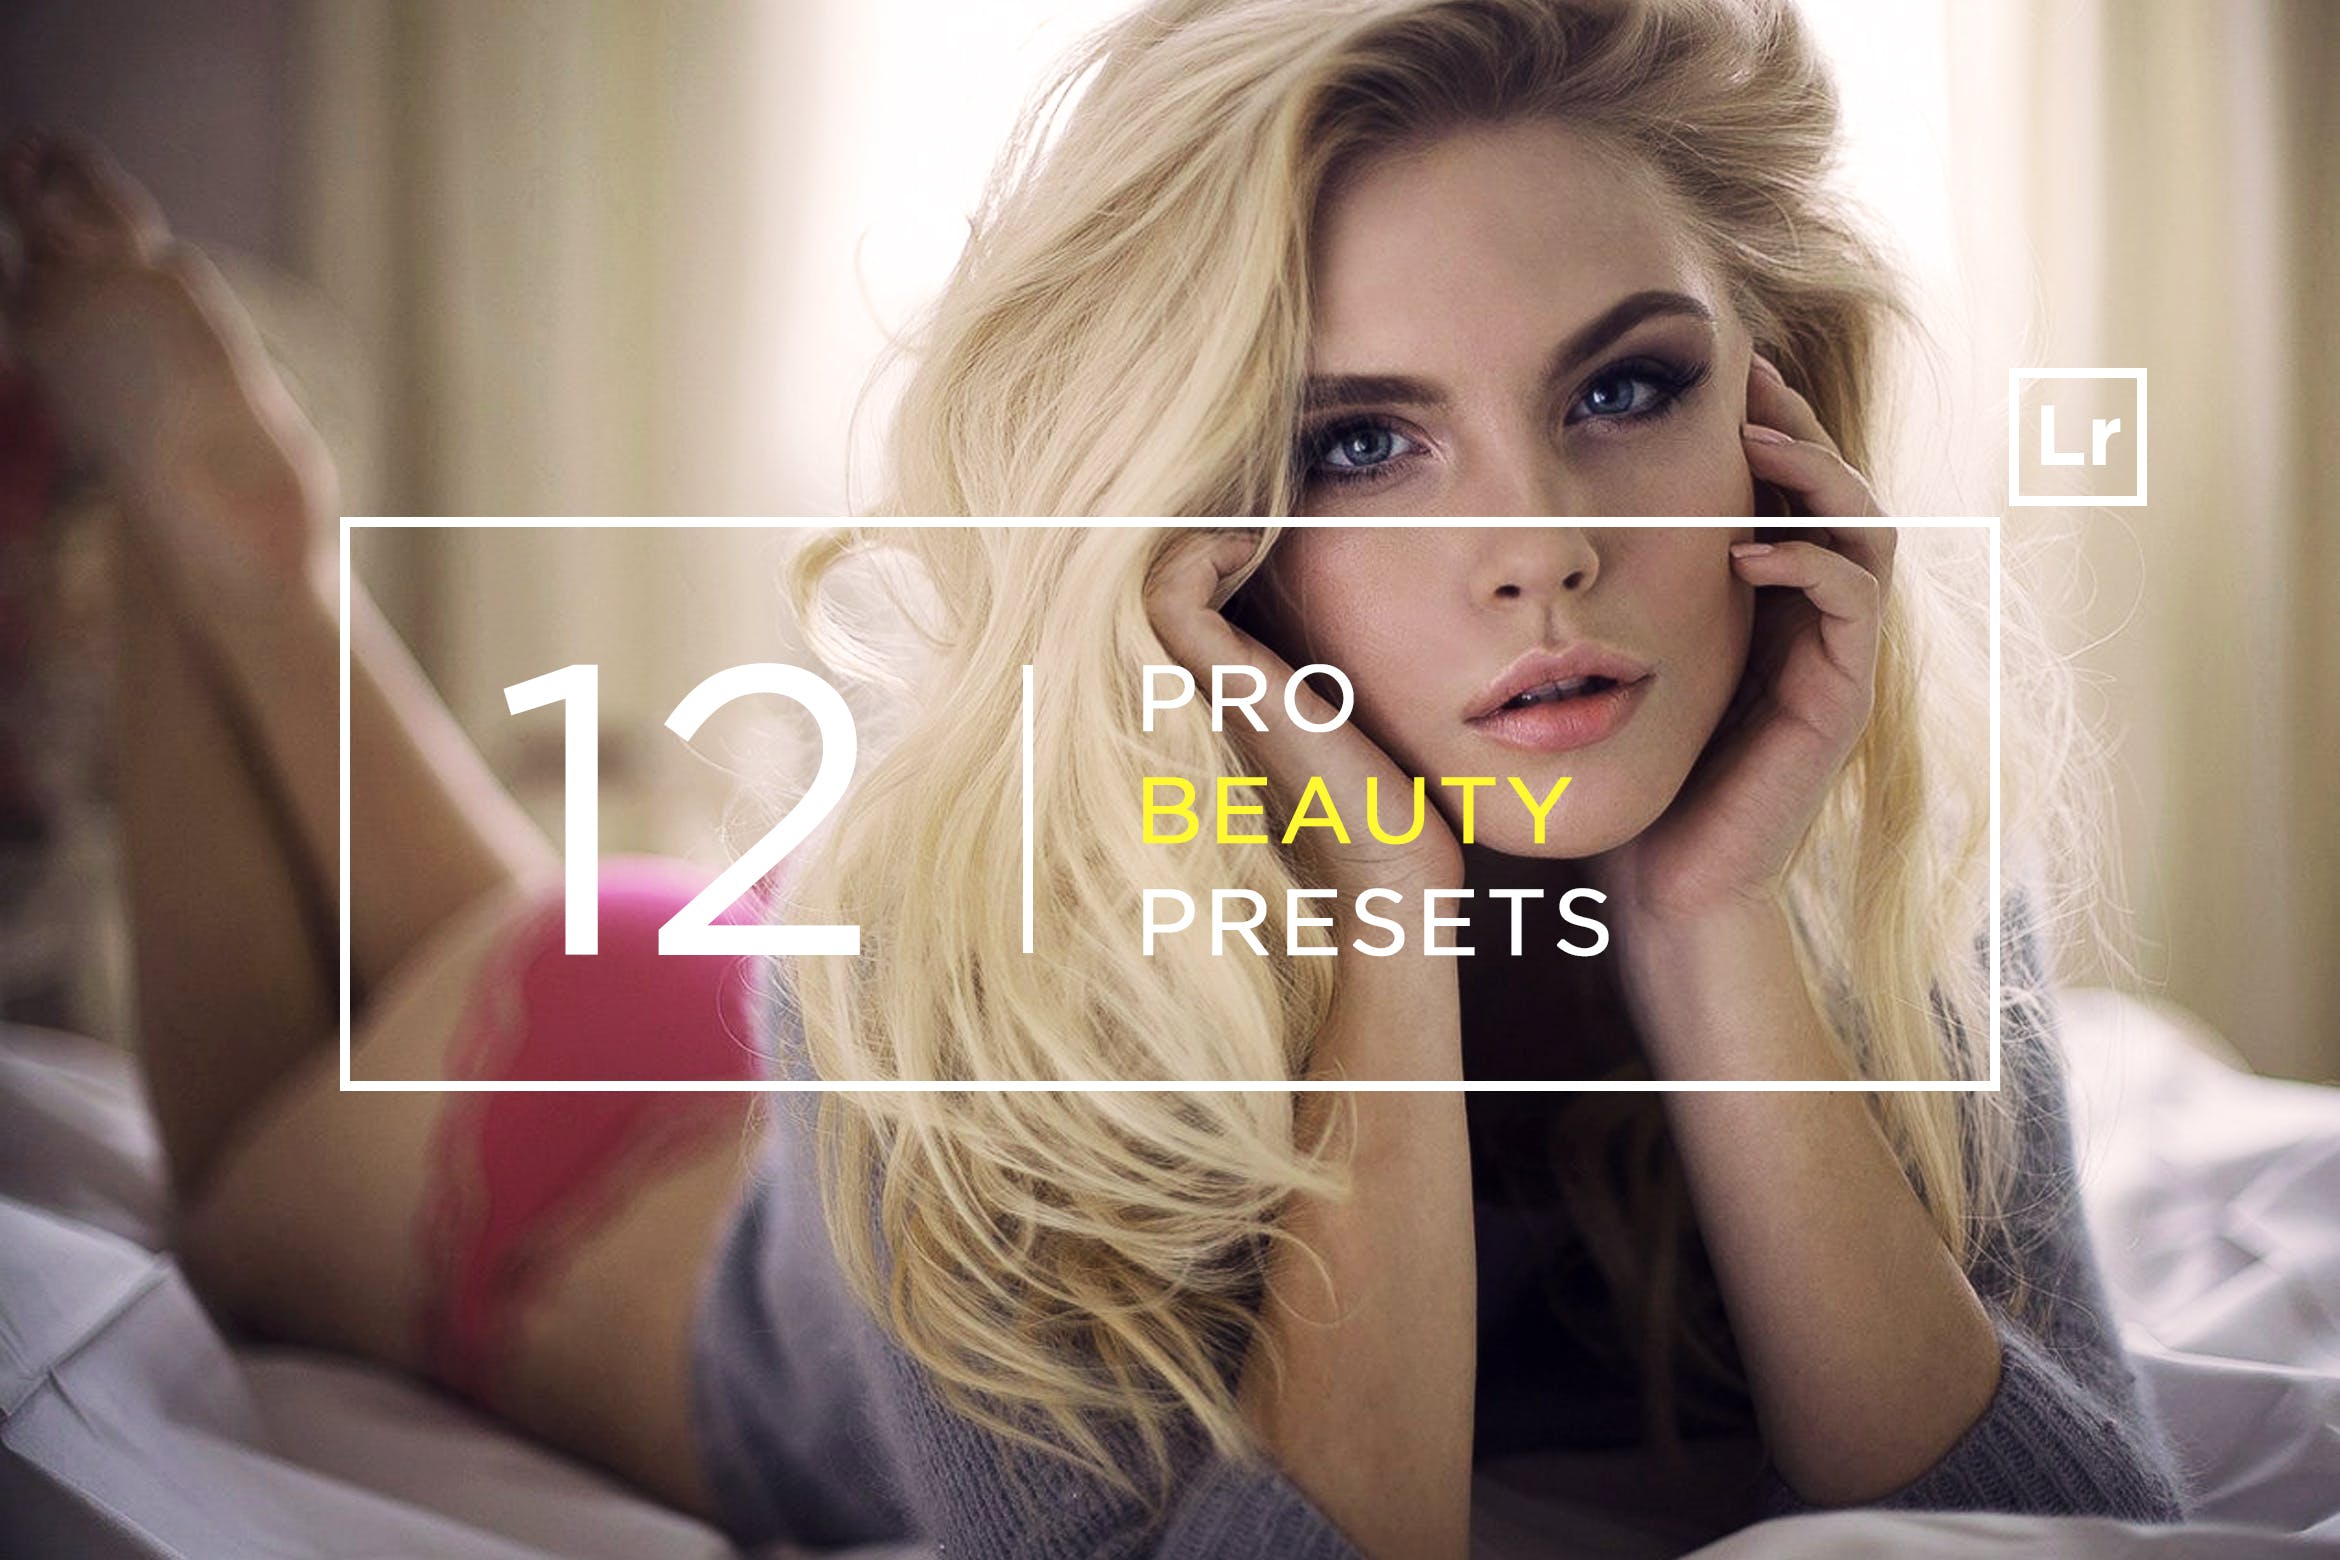 12款超级美颜调色滤镜16图库精选LR预设 12 Pro Beauty Lightroom Presets插图